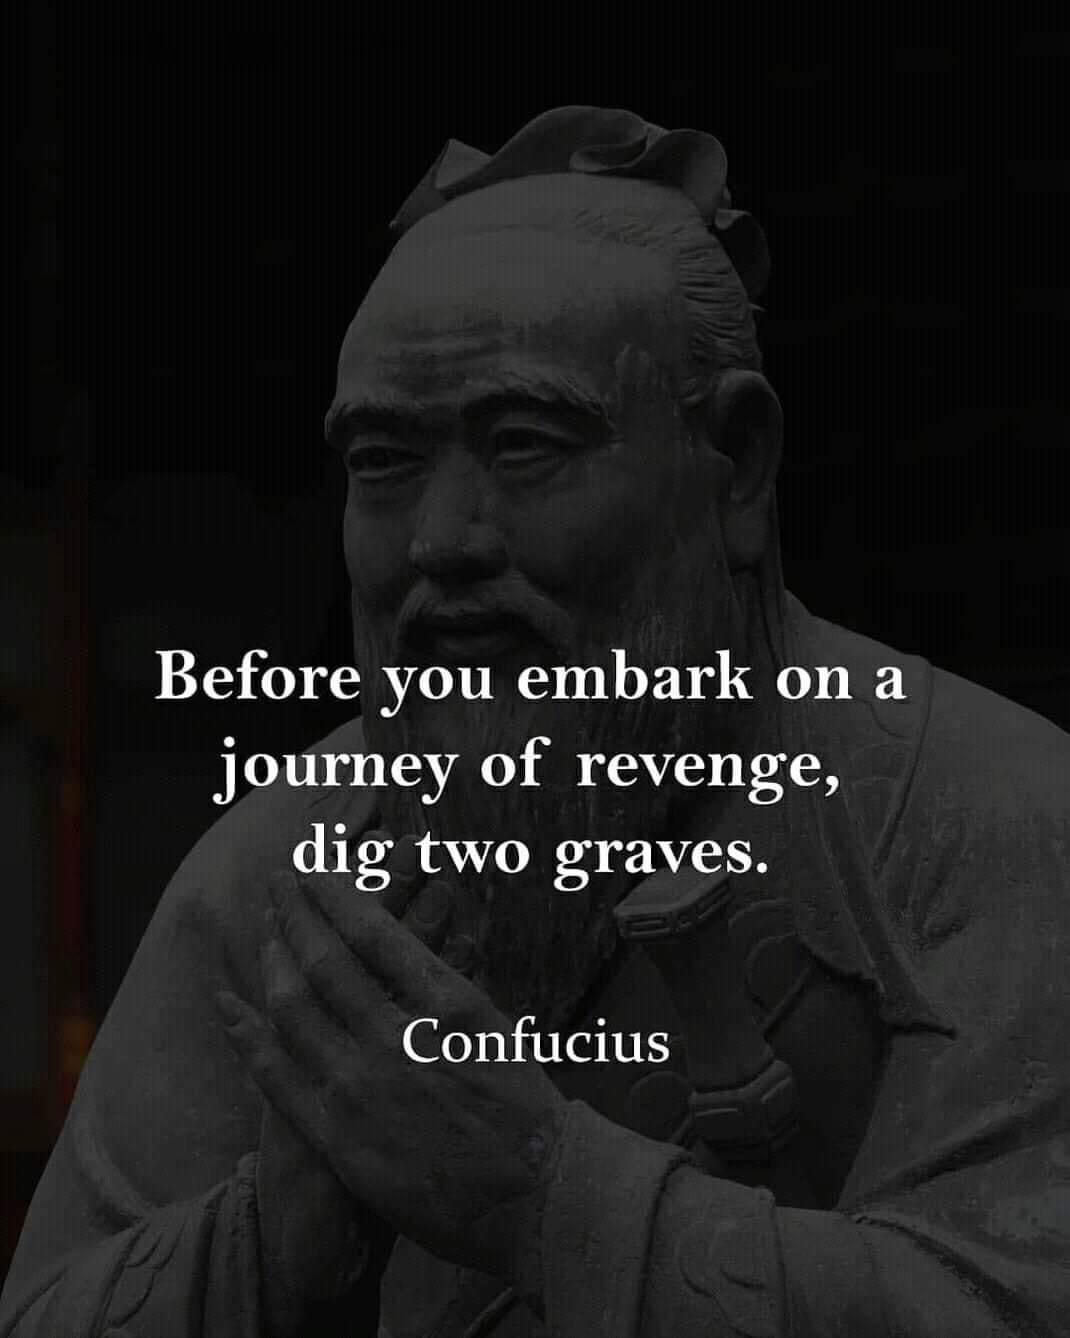 Confucius quote Blank Meme Template